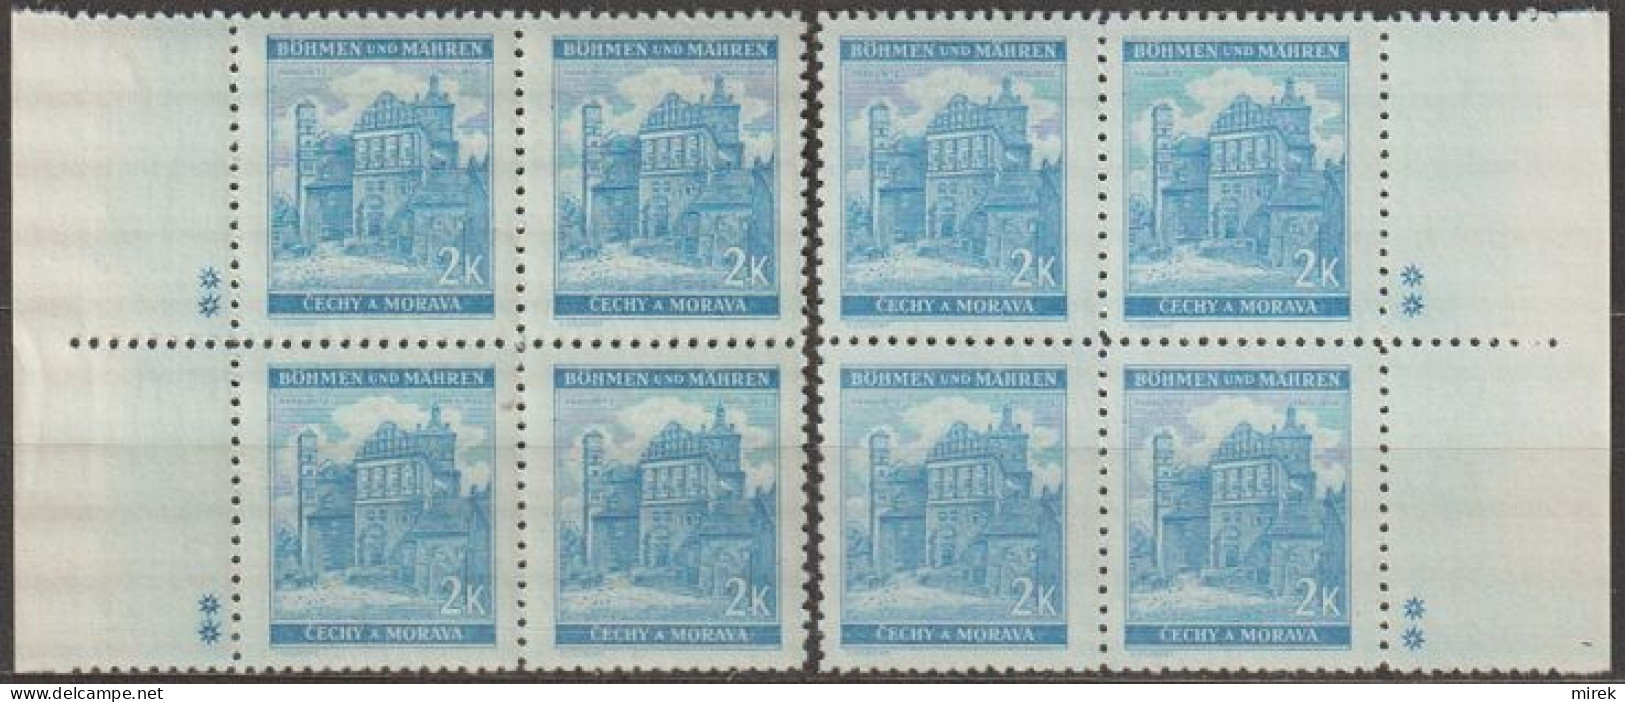 058/ Pof. 59, Light Blue; Border 4-blocks, Plate Mark ++ - Unused Stamps